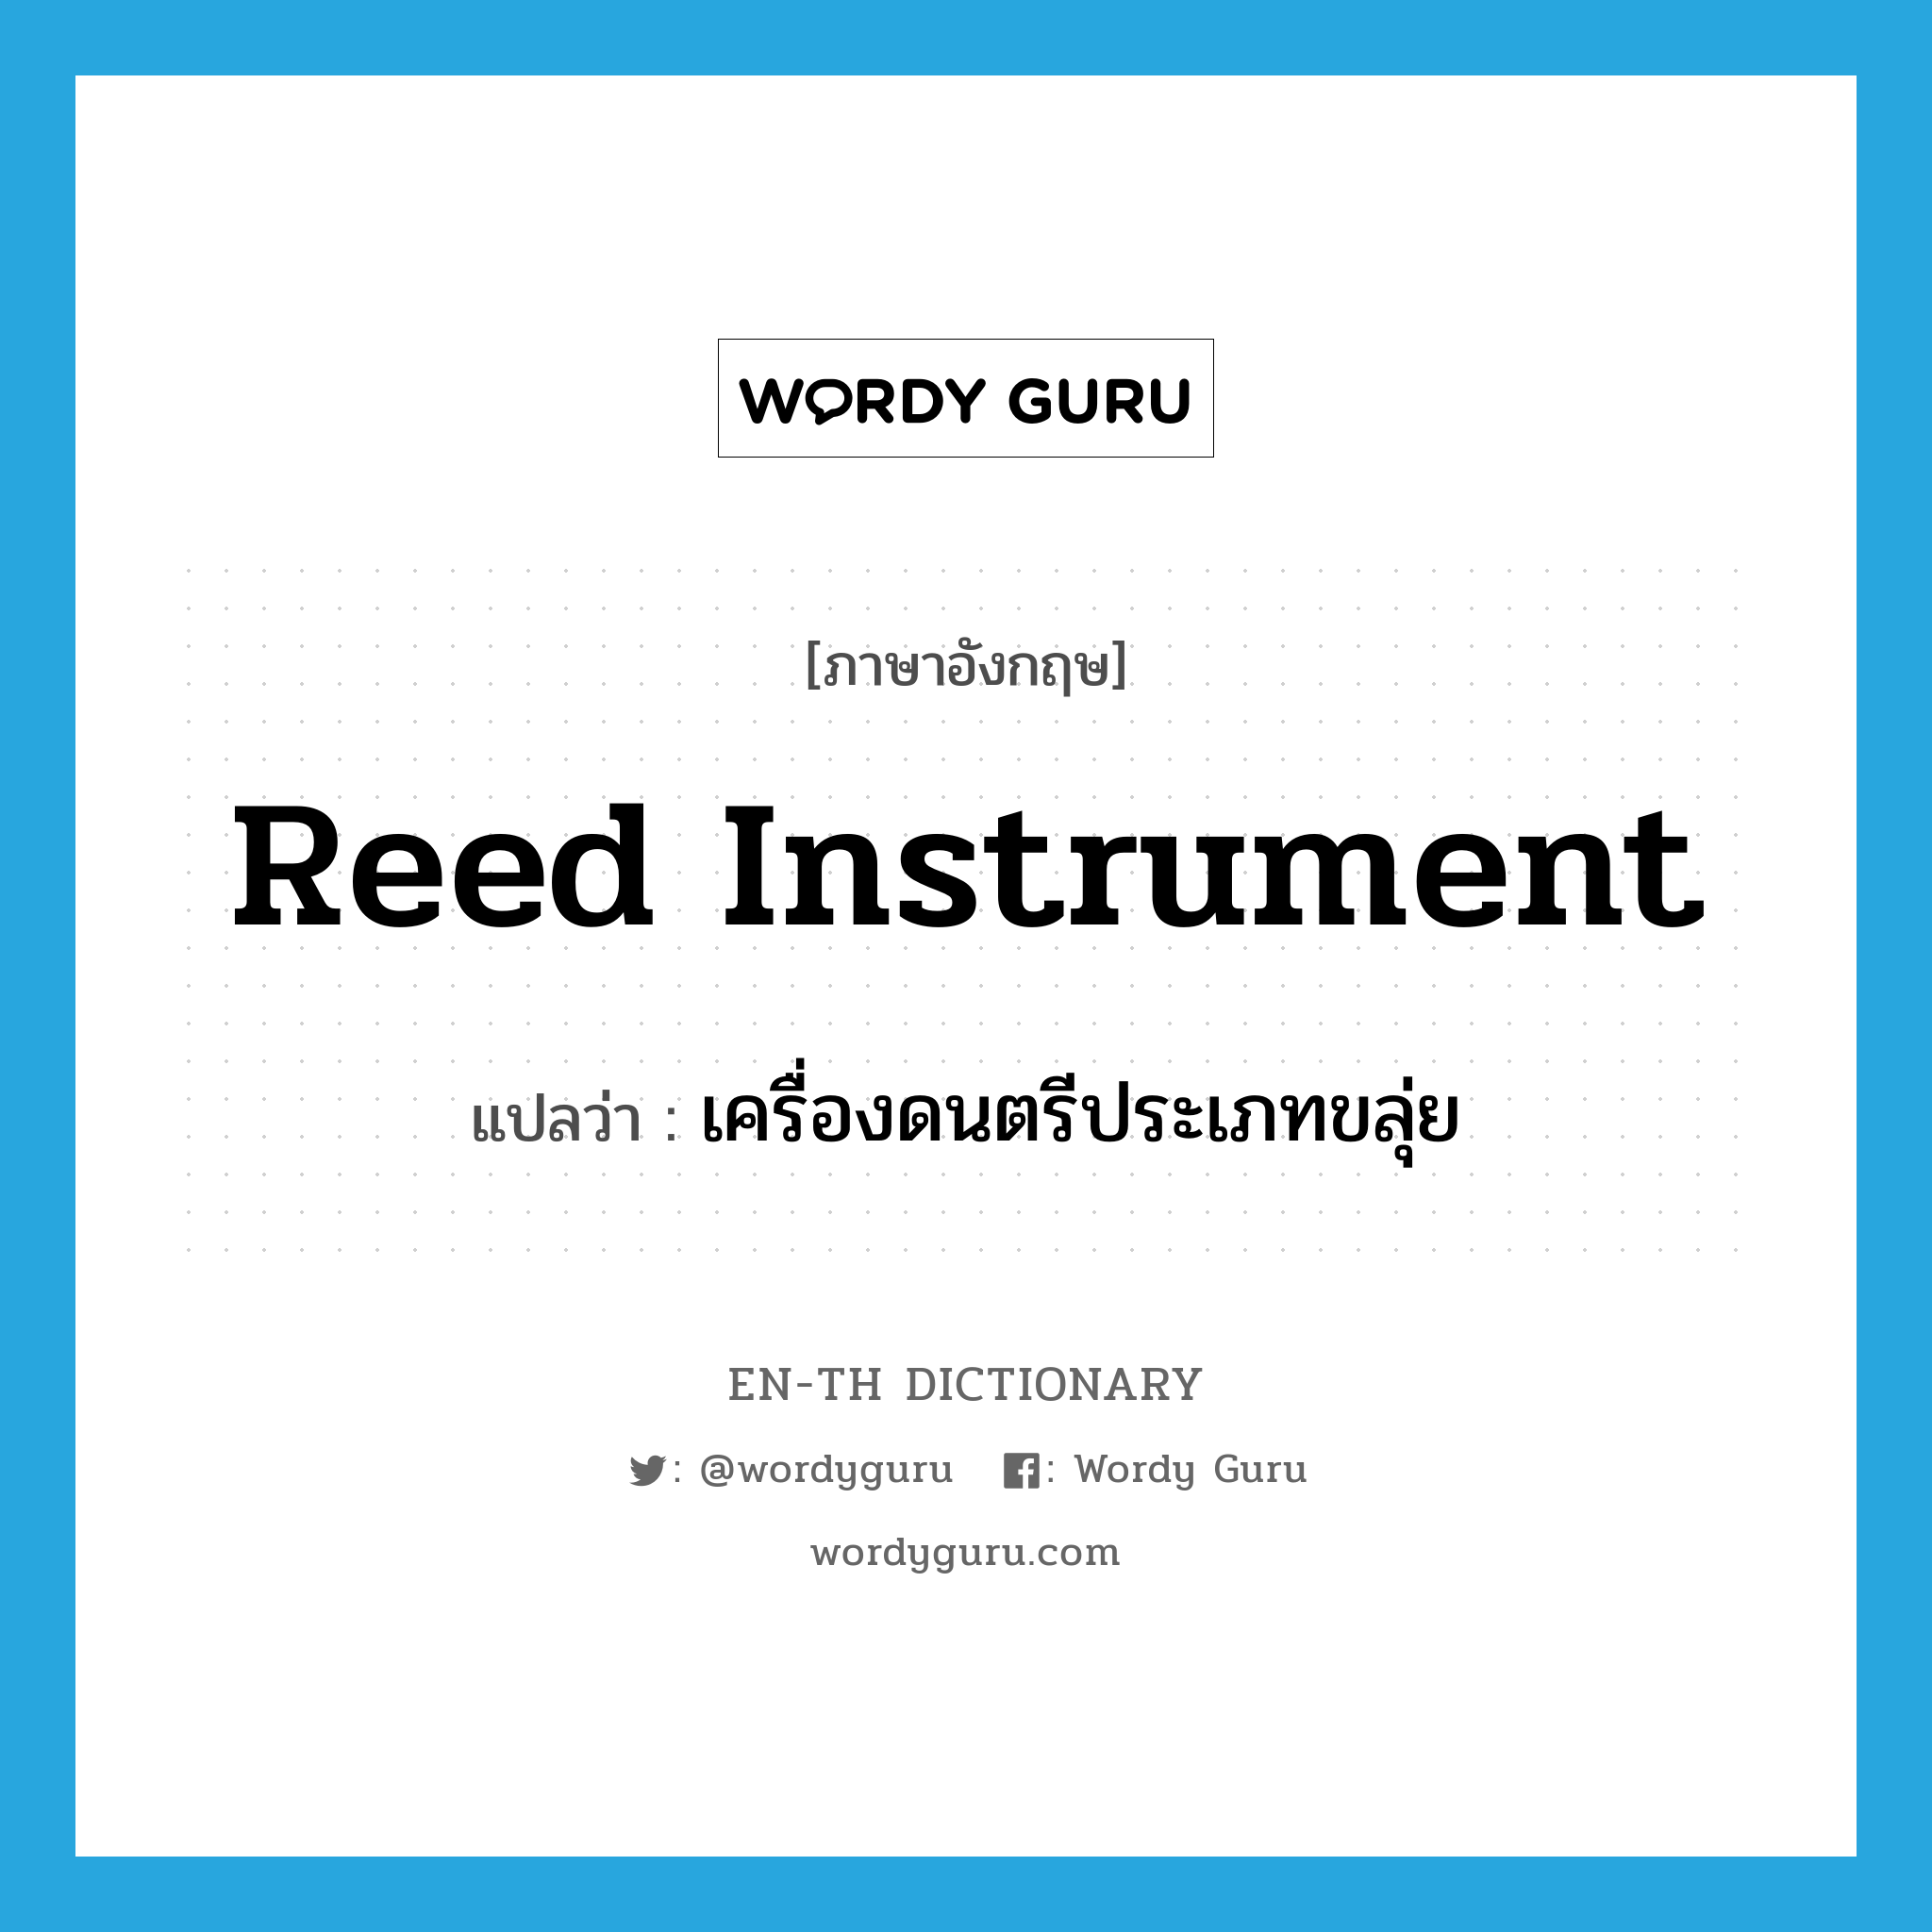 reed instrument แปลว่า?, คำศัพท์ภาษาอังกฤษ reed instrument แปลว่า เครื่องดนตรีประเภทขลุ่ย ประเภท N หมวด N